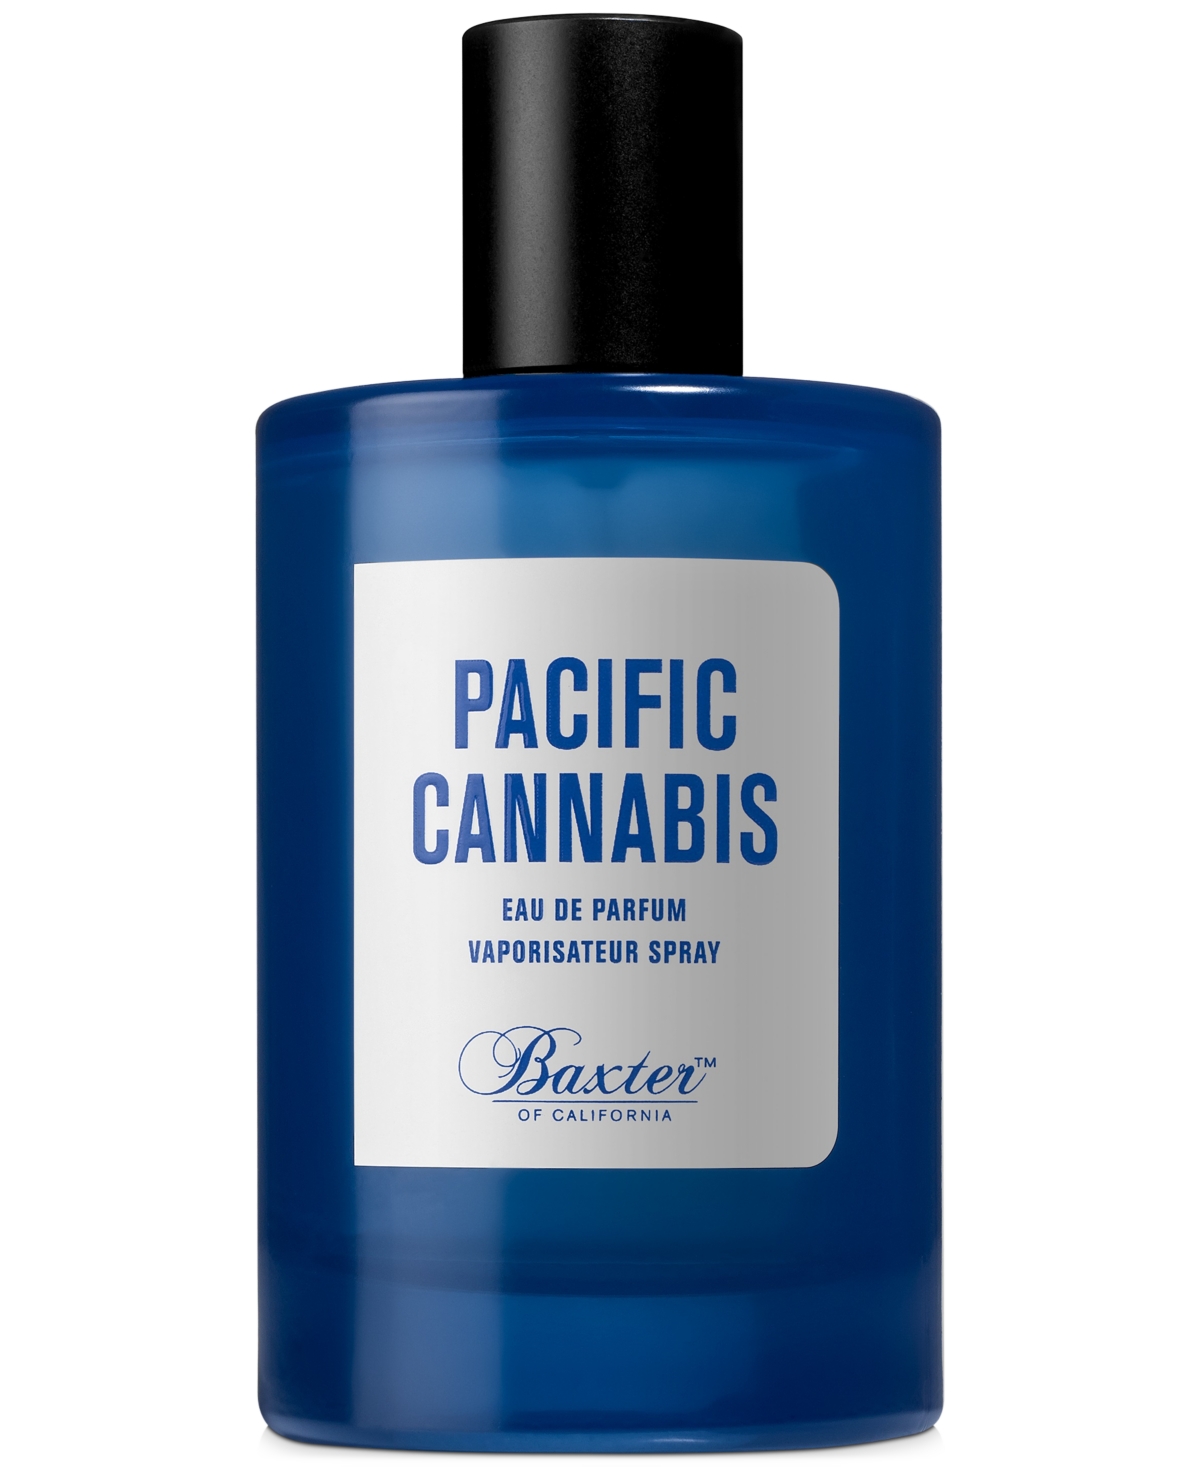 Baxter Of California Pacific Cannabis Eau de Parfum, 3.4-oz.